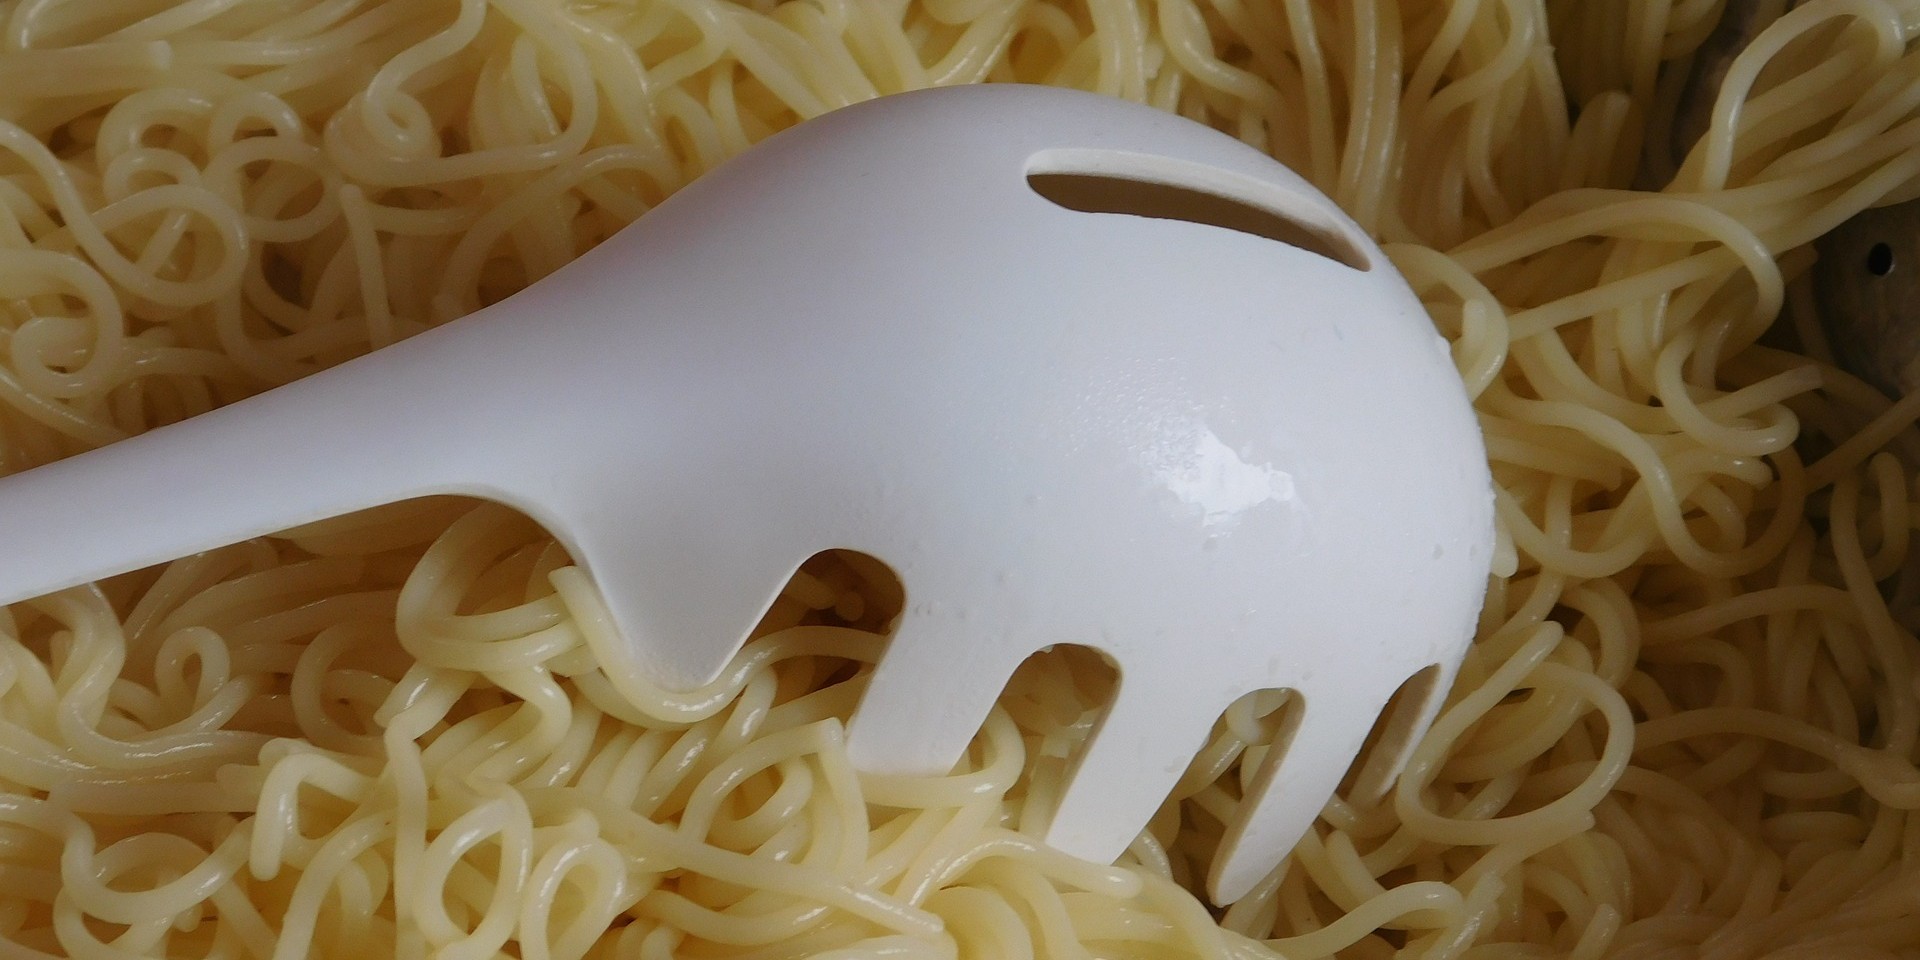 Jedenje podgrijanih ostataka tjestenine pomaže pri mršavljenju, kaže nutricionistica